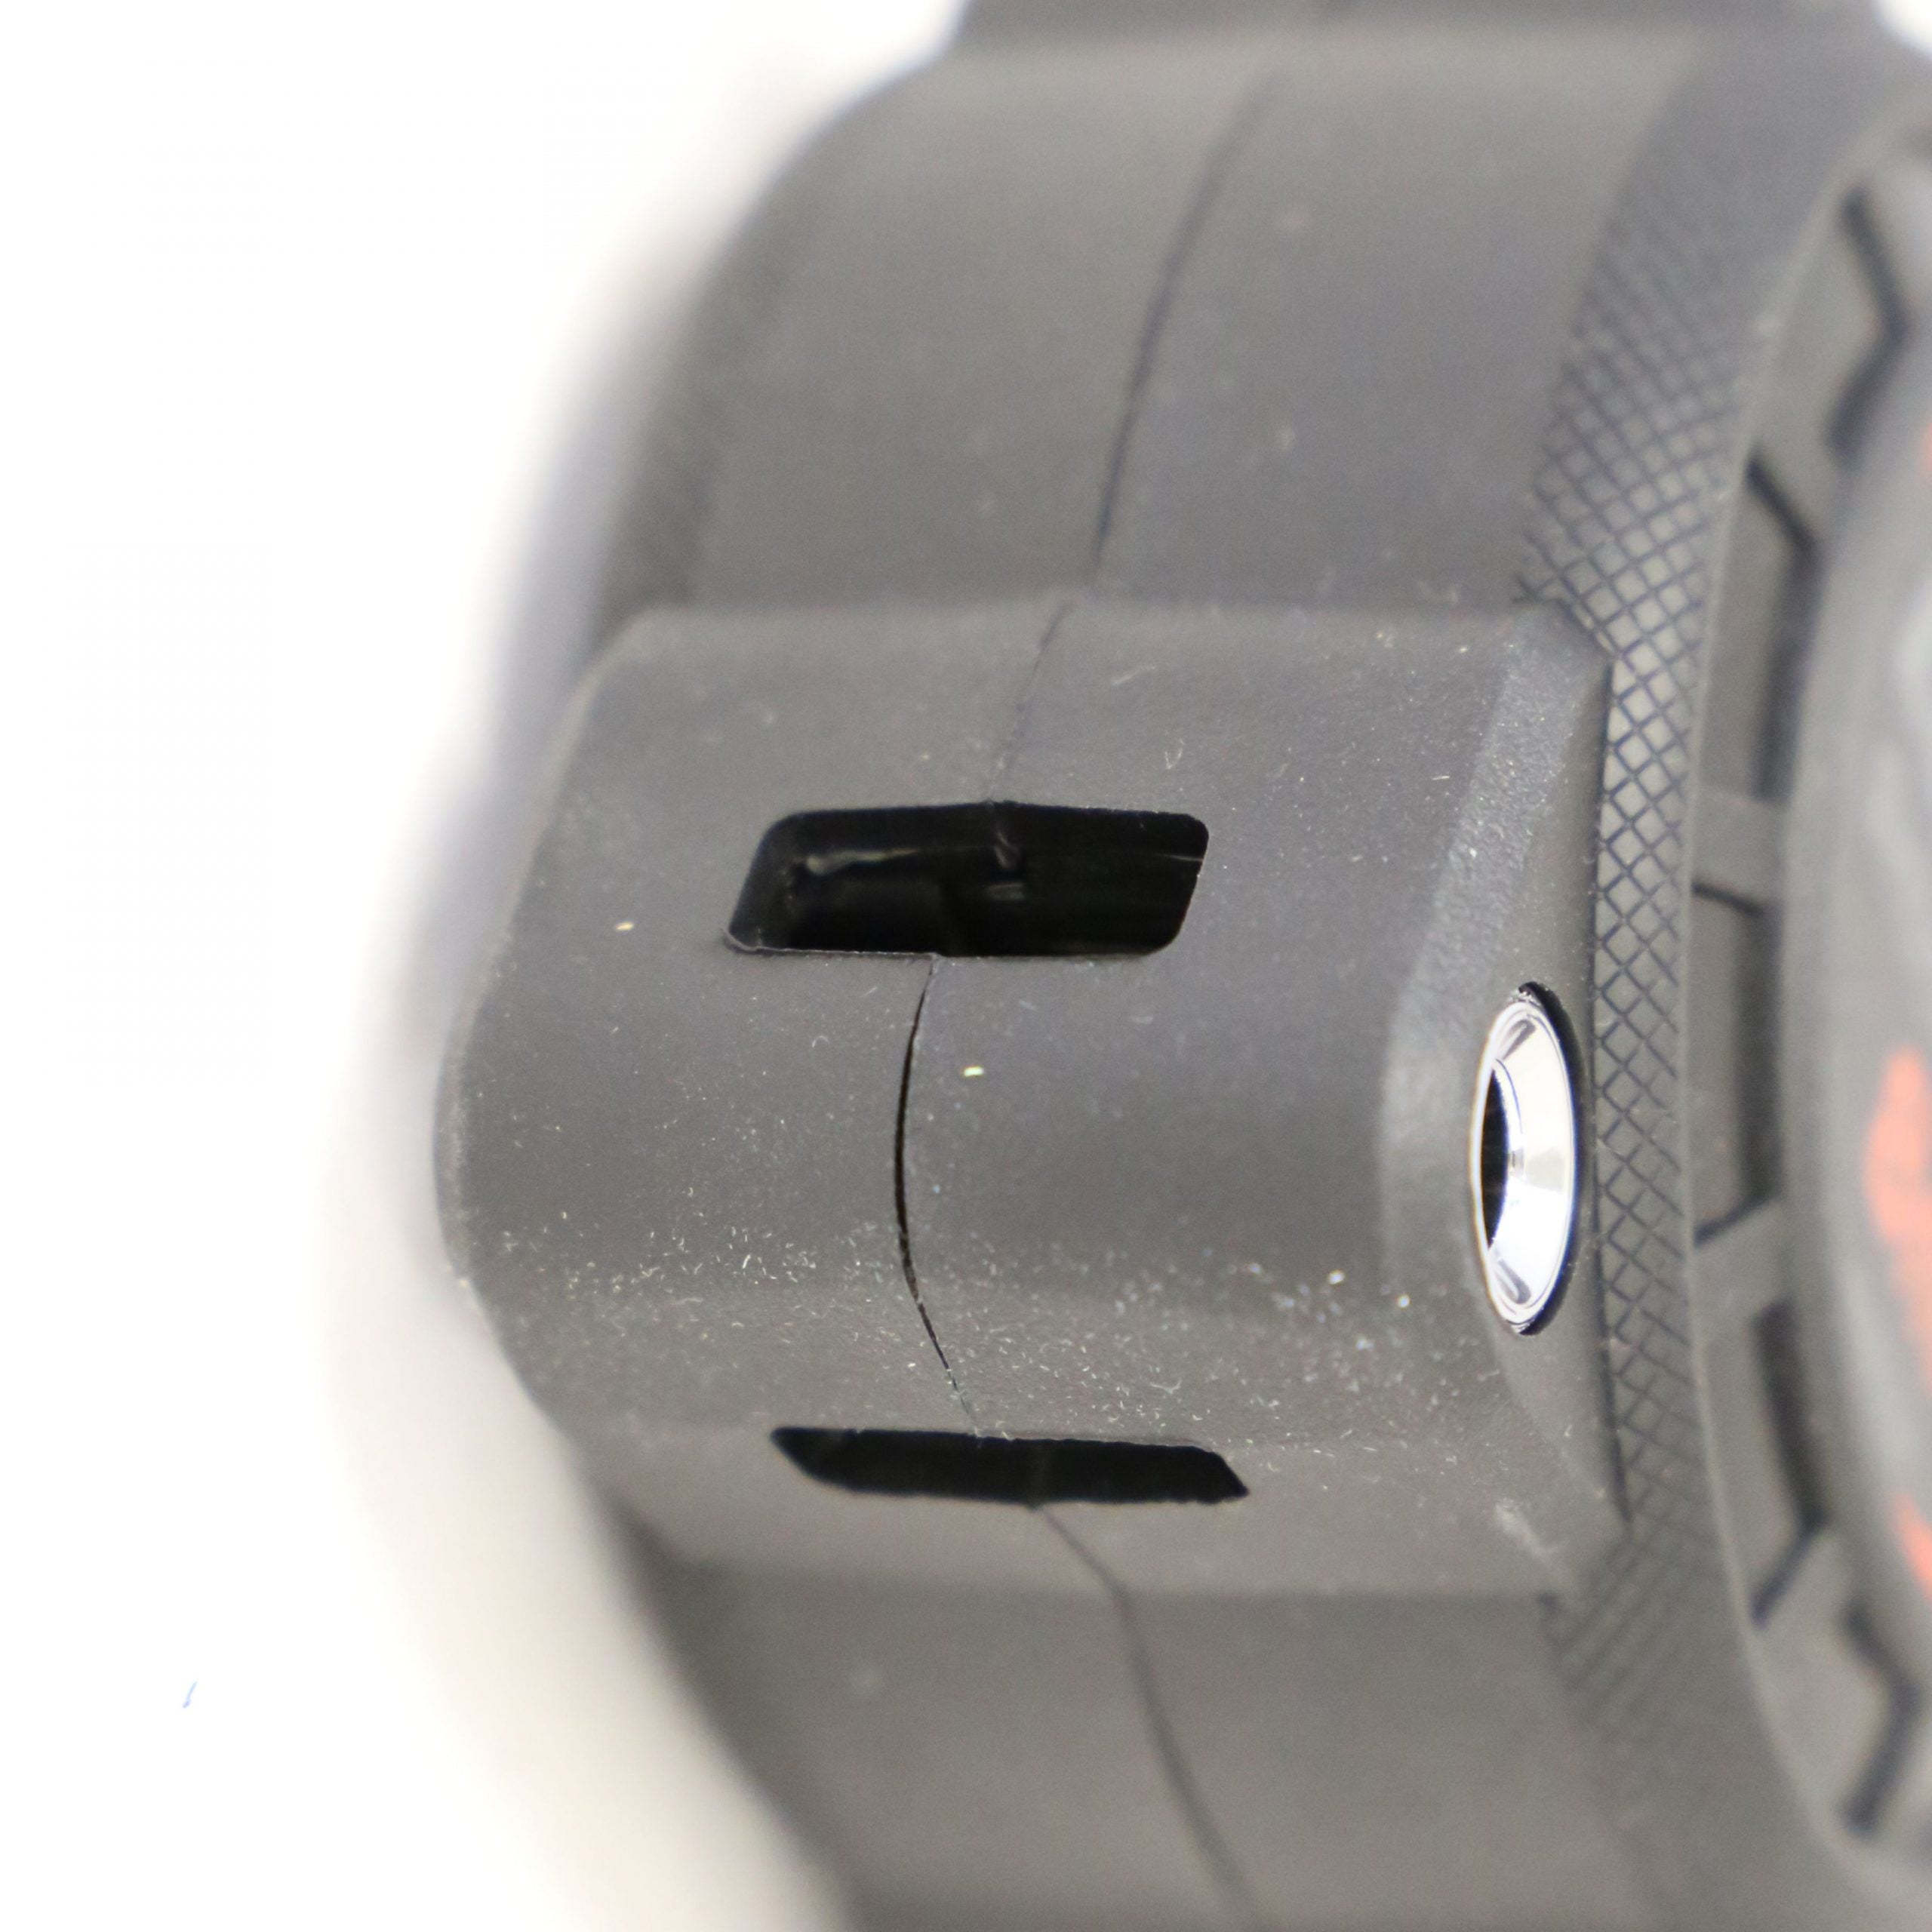 8m x 30mm Shockforce Nite Eye Tape Measure NE830M by Lufkin